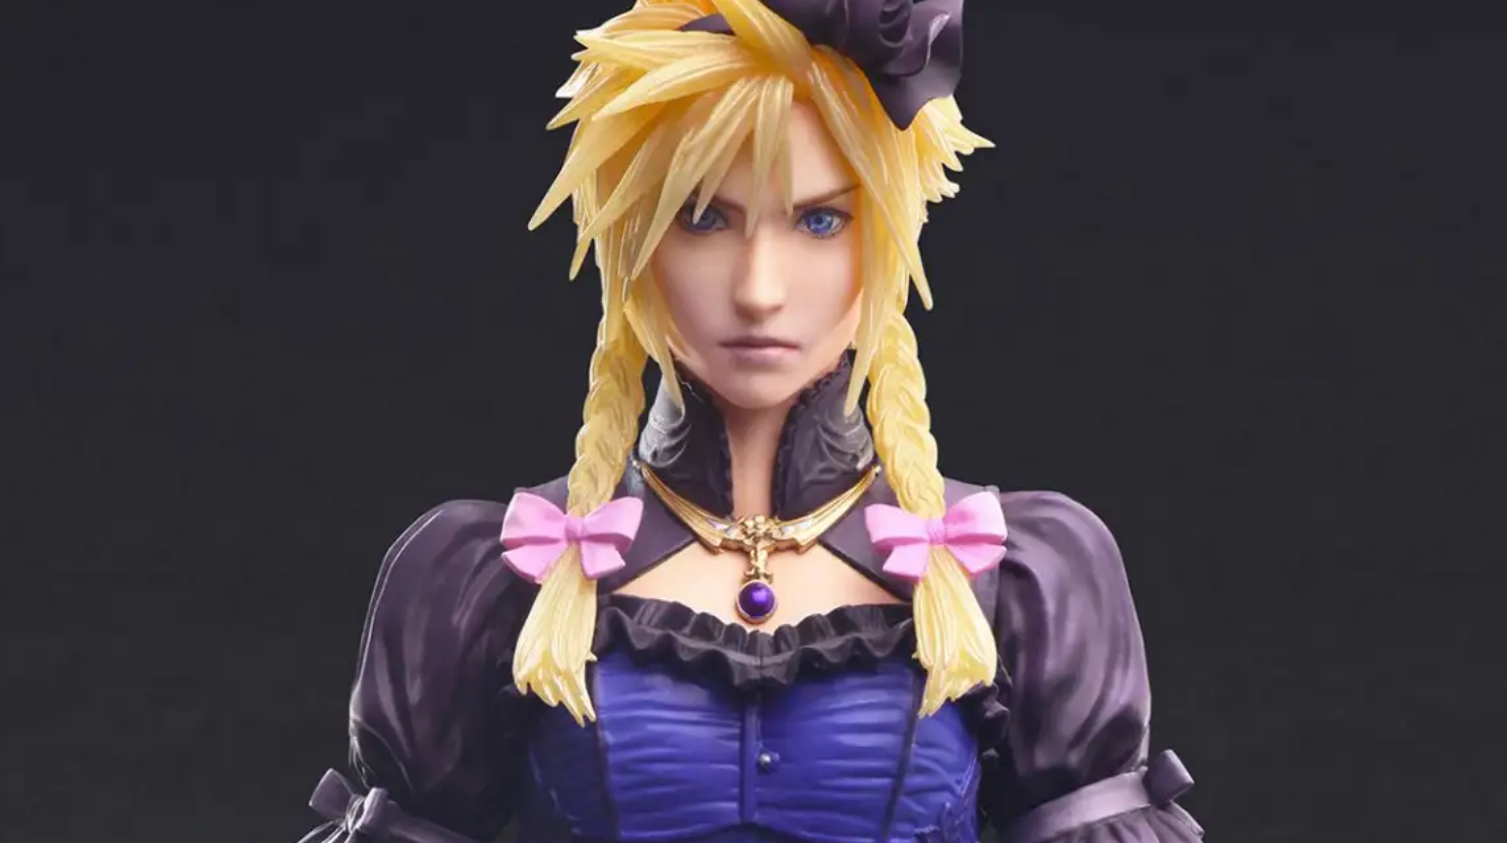 Immagine di Final Fantasy VII Remake ha una nuova action figure di Cloud in versione 'Gothic Lolita'